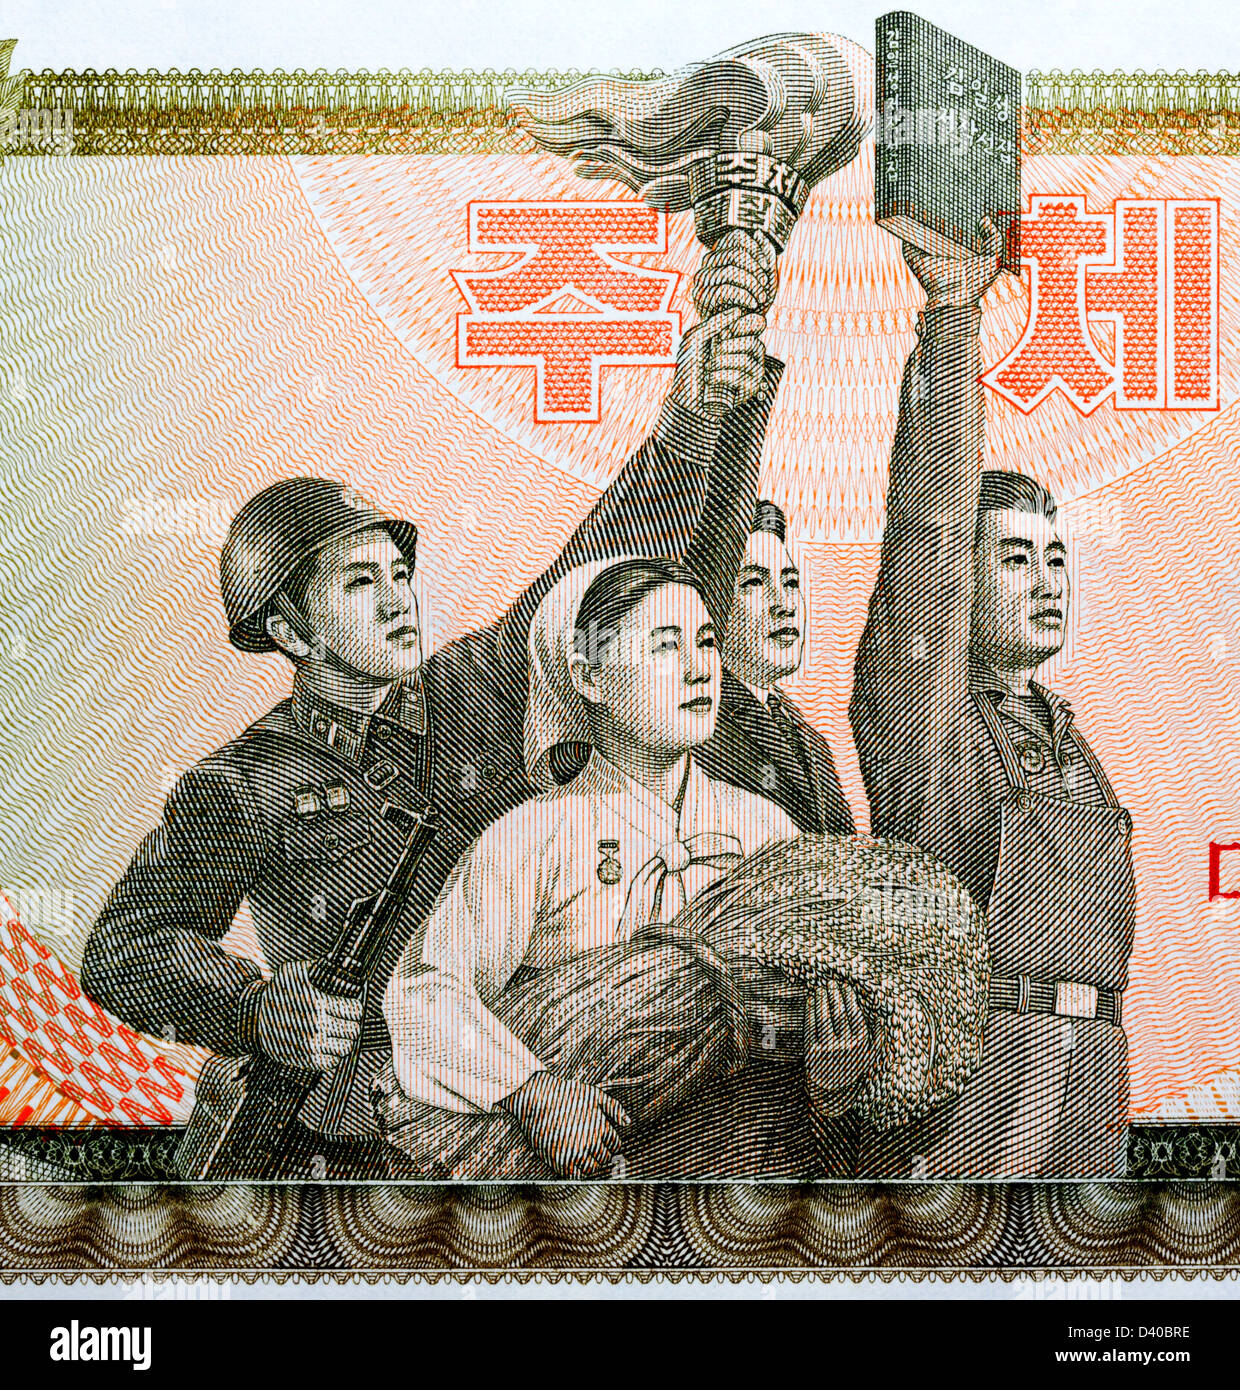 Soldato, contadina con grano, partigiano con torcia, l uomo con libro da 50 ha vinto la banconota, Corea del Nord, 1978 Foto Stock